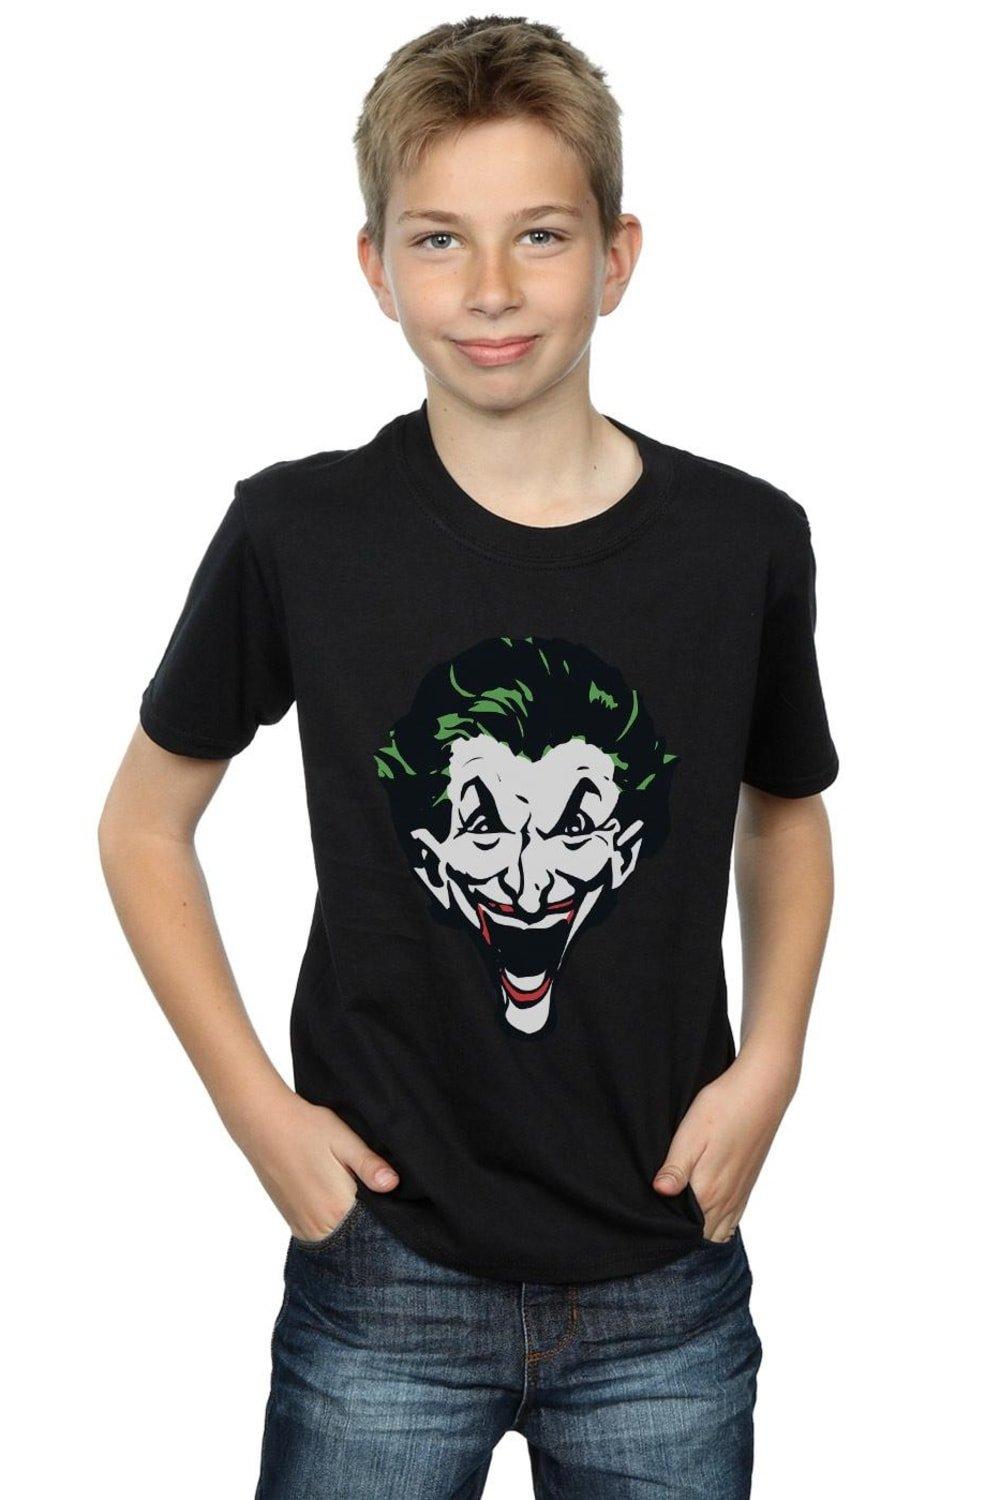 The Joker Big Face T-Shirt